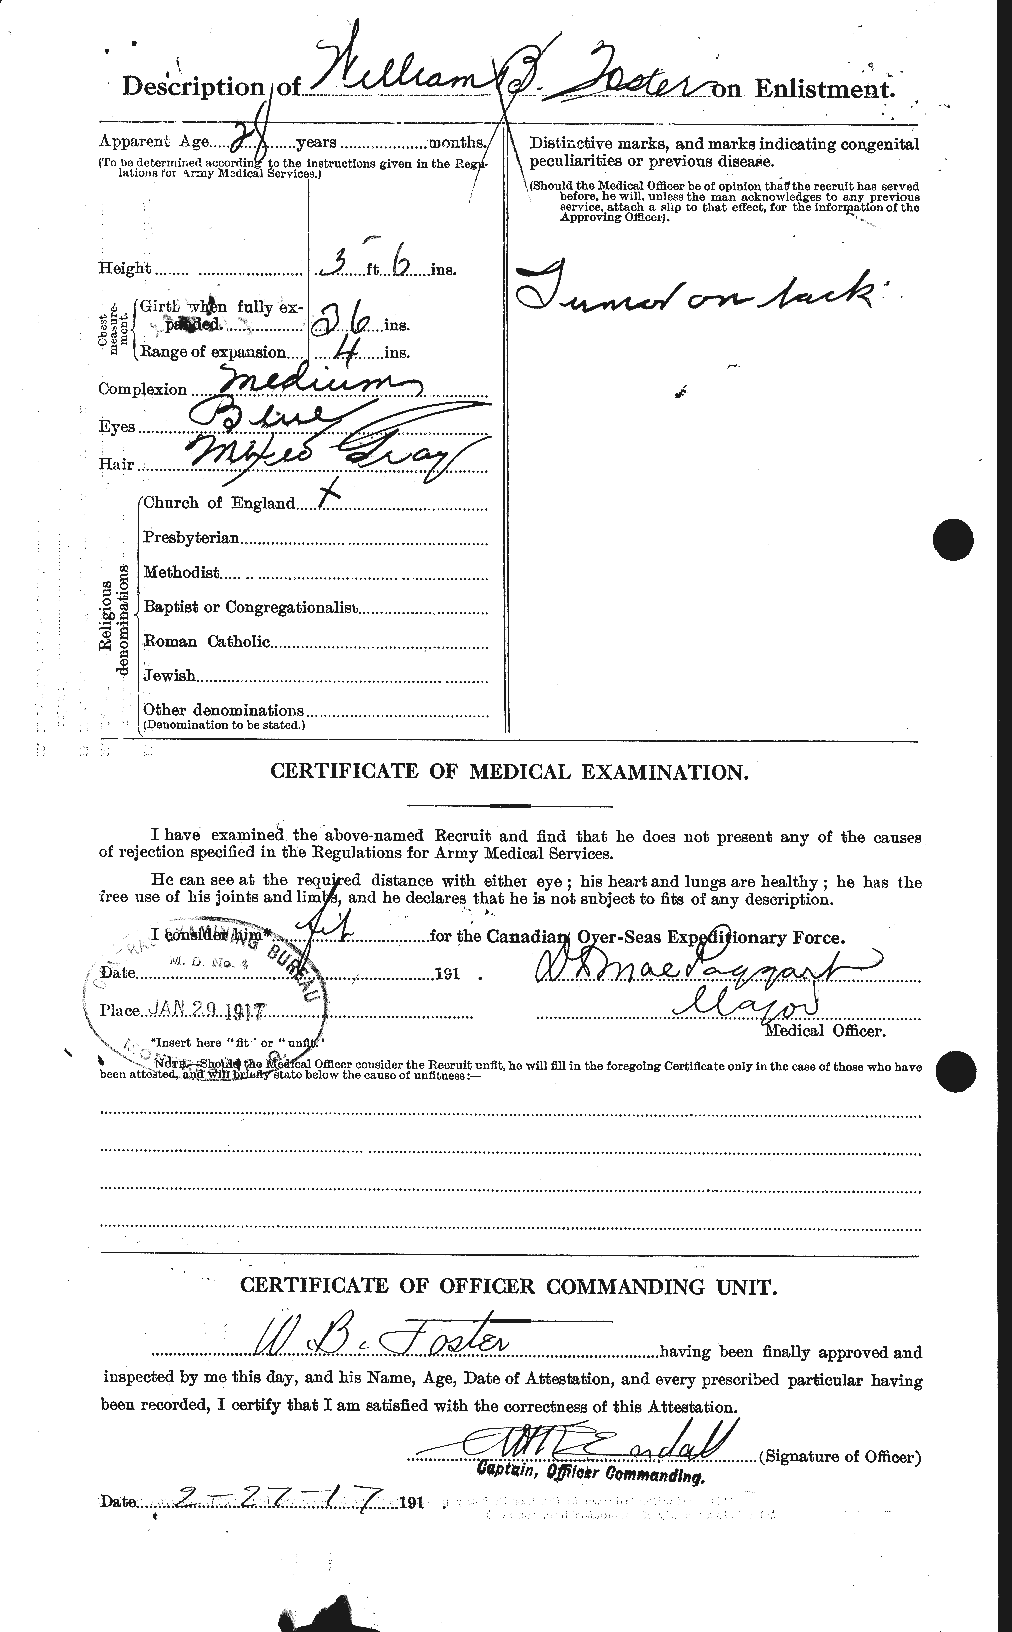 Dossiers du Personnel de la Première Guerre mondiale - CEC 328729b